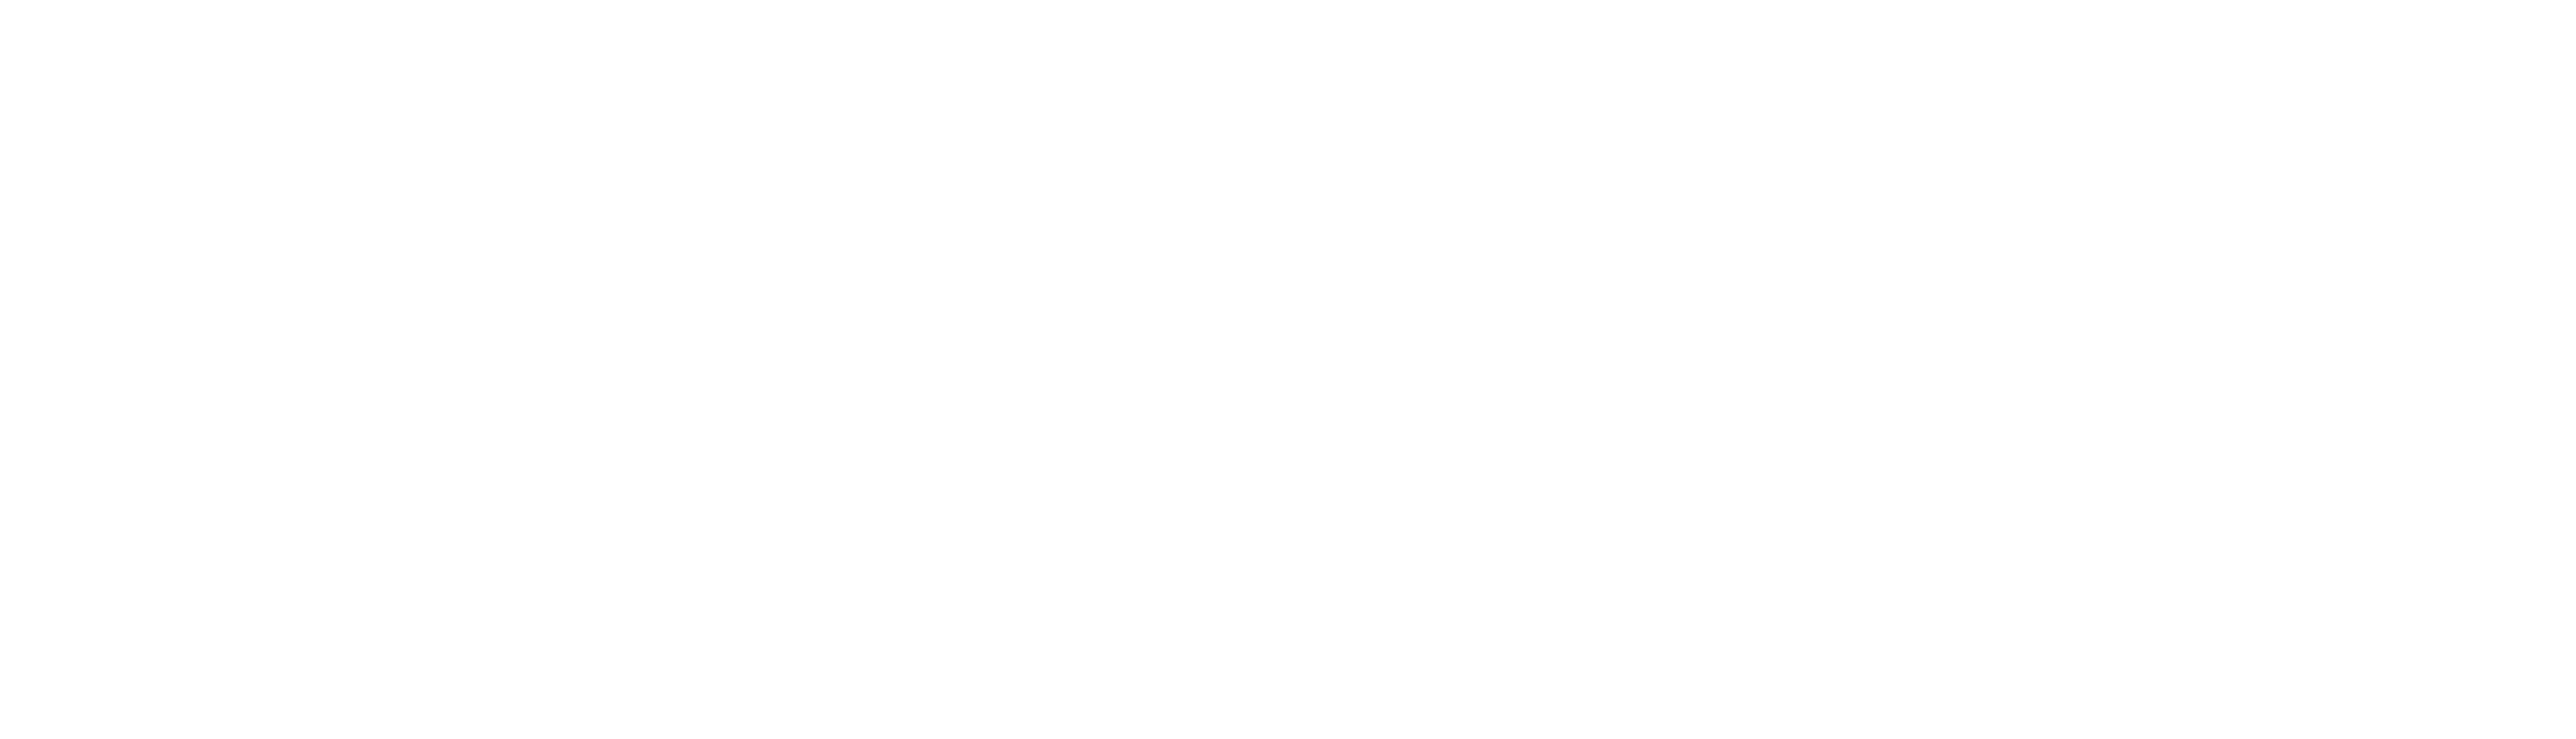 Stryker-Logo-wht